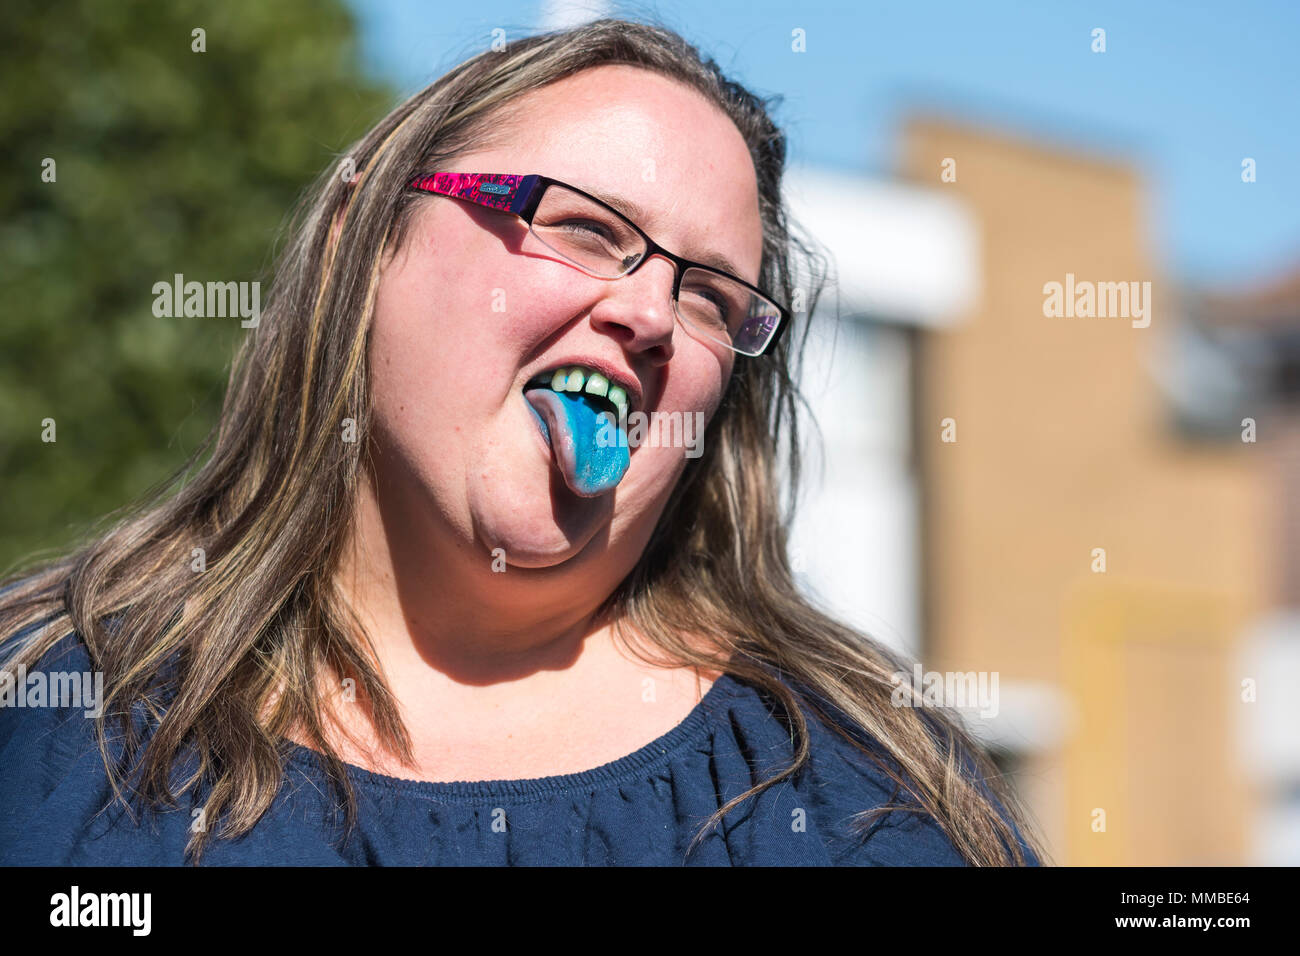 Frau Zunge heraus haften nach dem Trinken Blue slush Puppy trinken, mit blauen Flecken auf ihrer Zunge und Zähne, während lächelnd im Sommer. Happy Konzept. Stockfoto